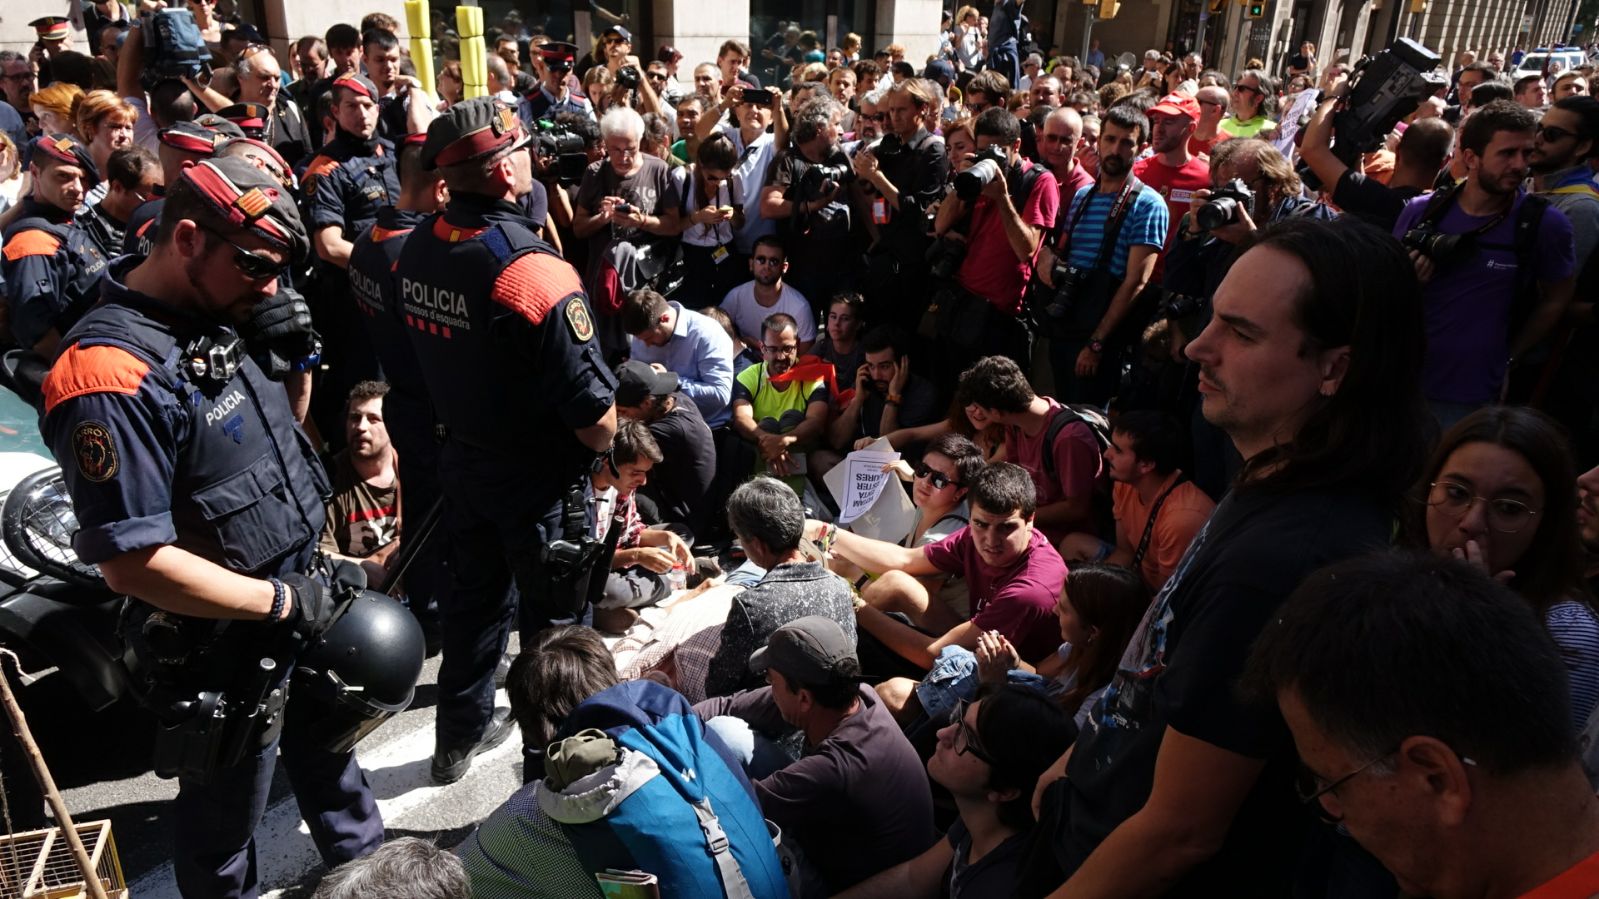 Vídeo: aldarulls entre Mossos i manifestants a la Via Laietana